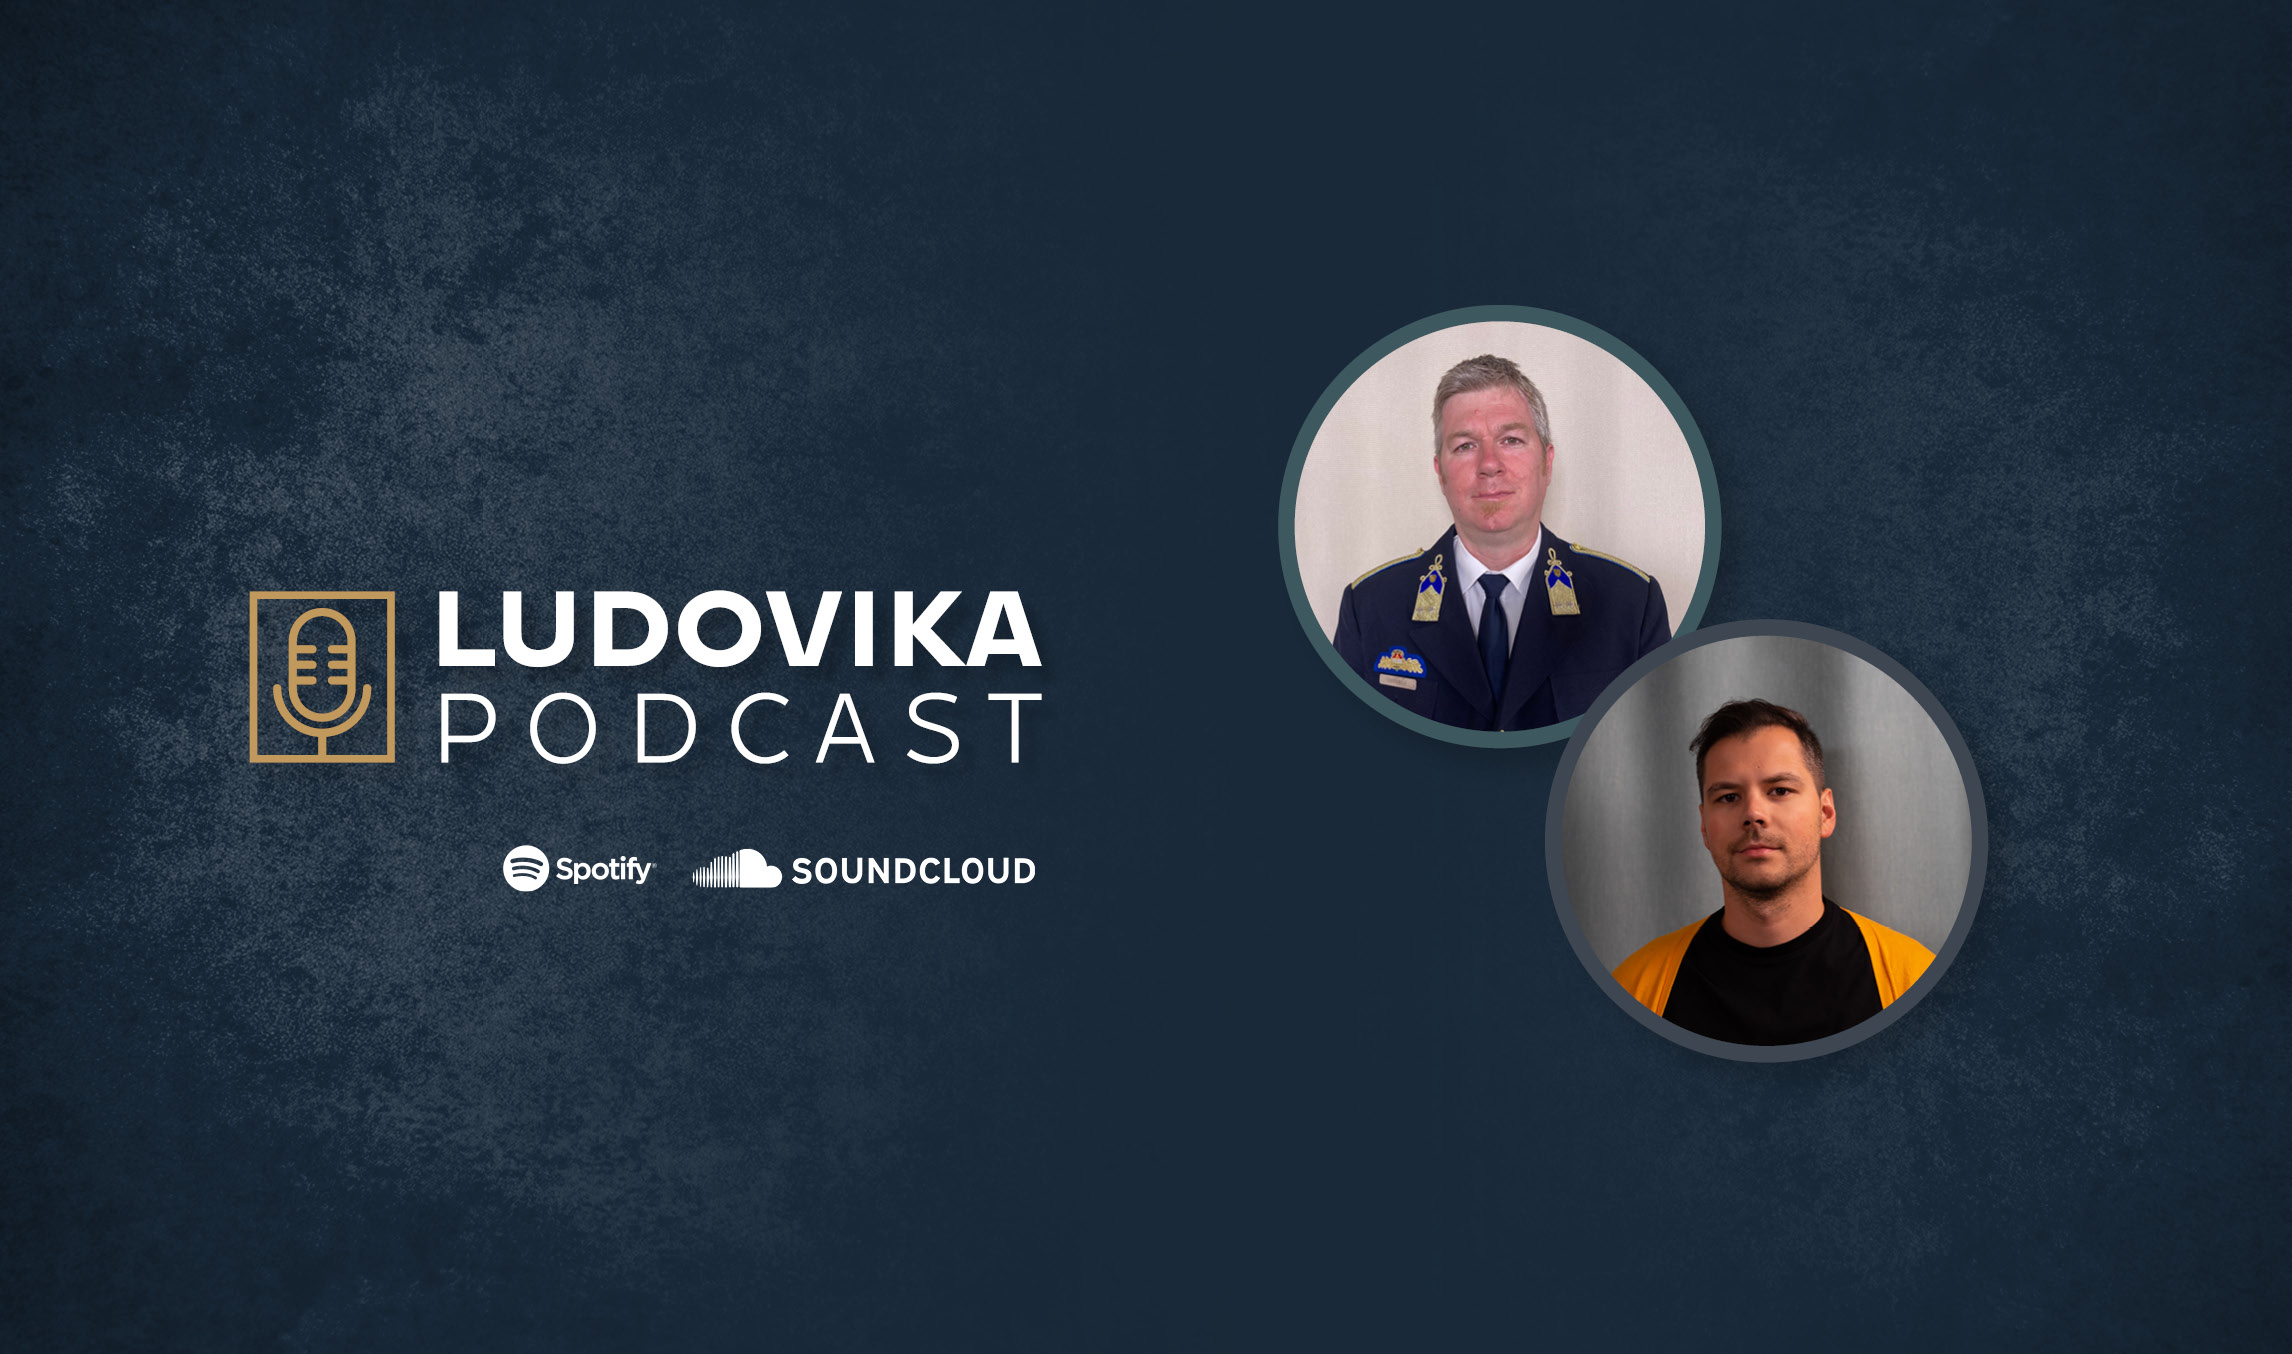 Ludovika_Podcast_Internetes csalások_1100x650